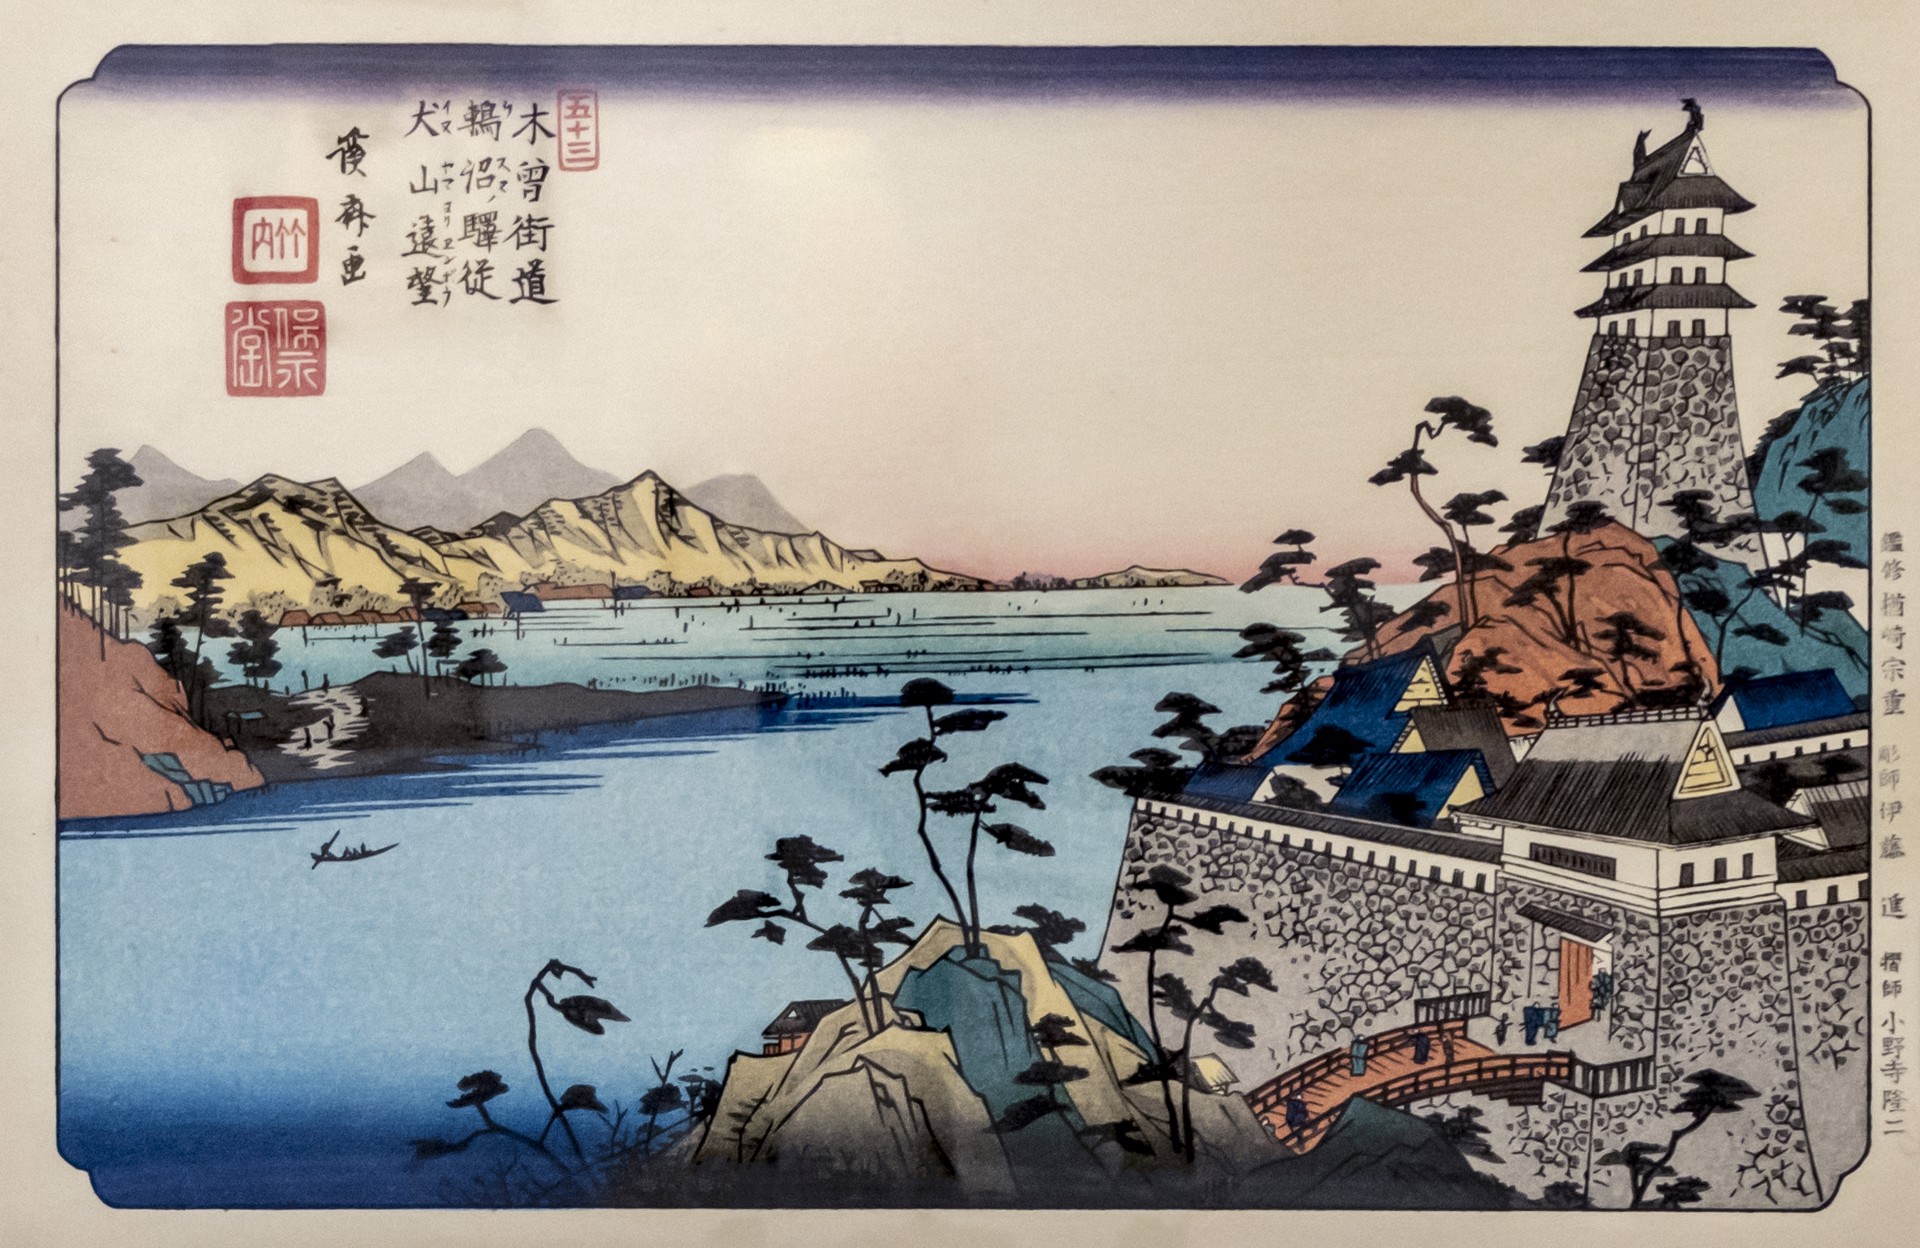 ⽊曾街道六⼗九次 ——⽝⼭远望 by 葛饰北斋 Katsushika Hokusai